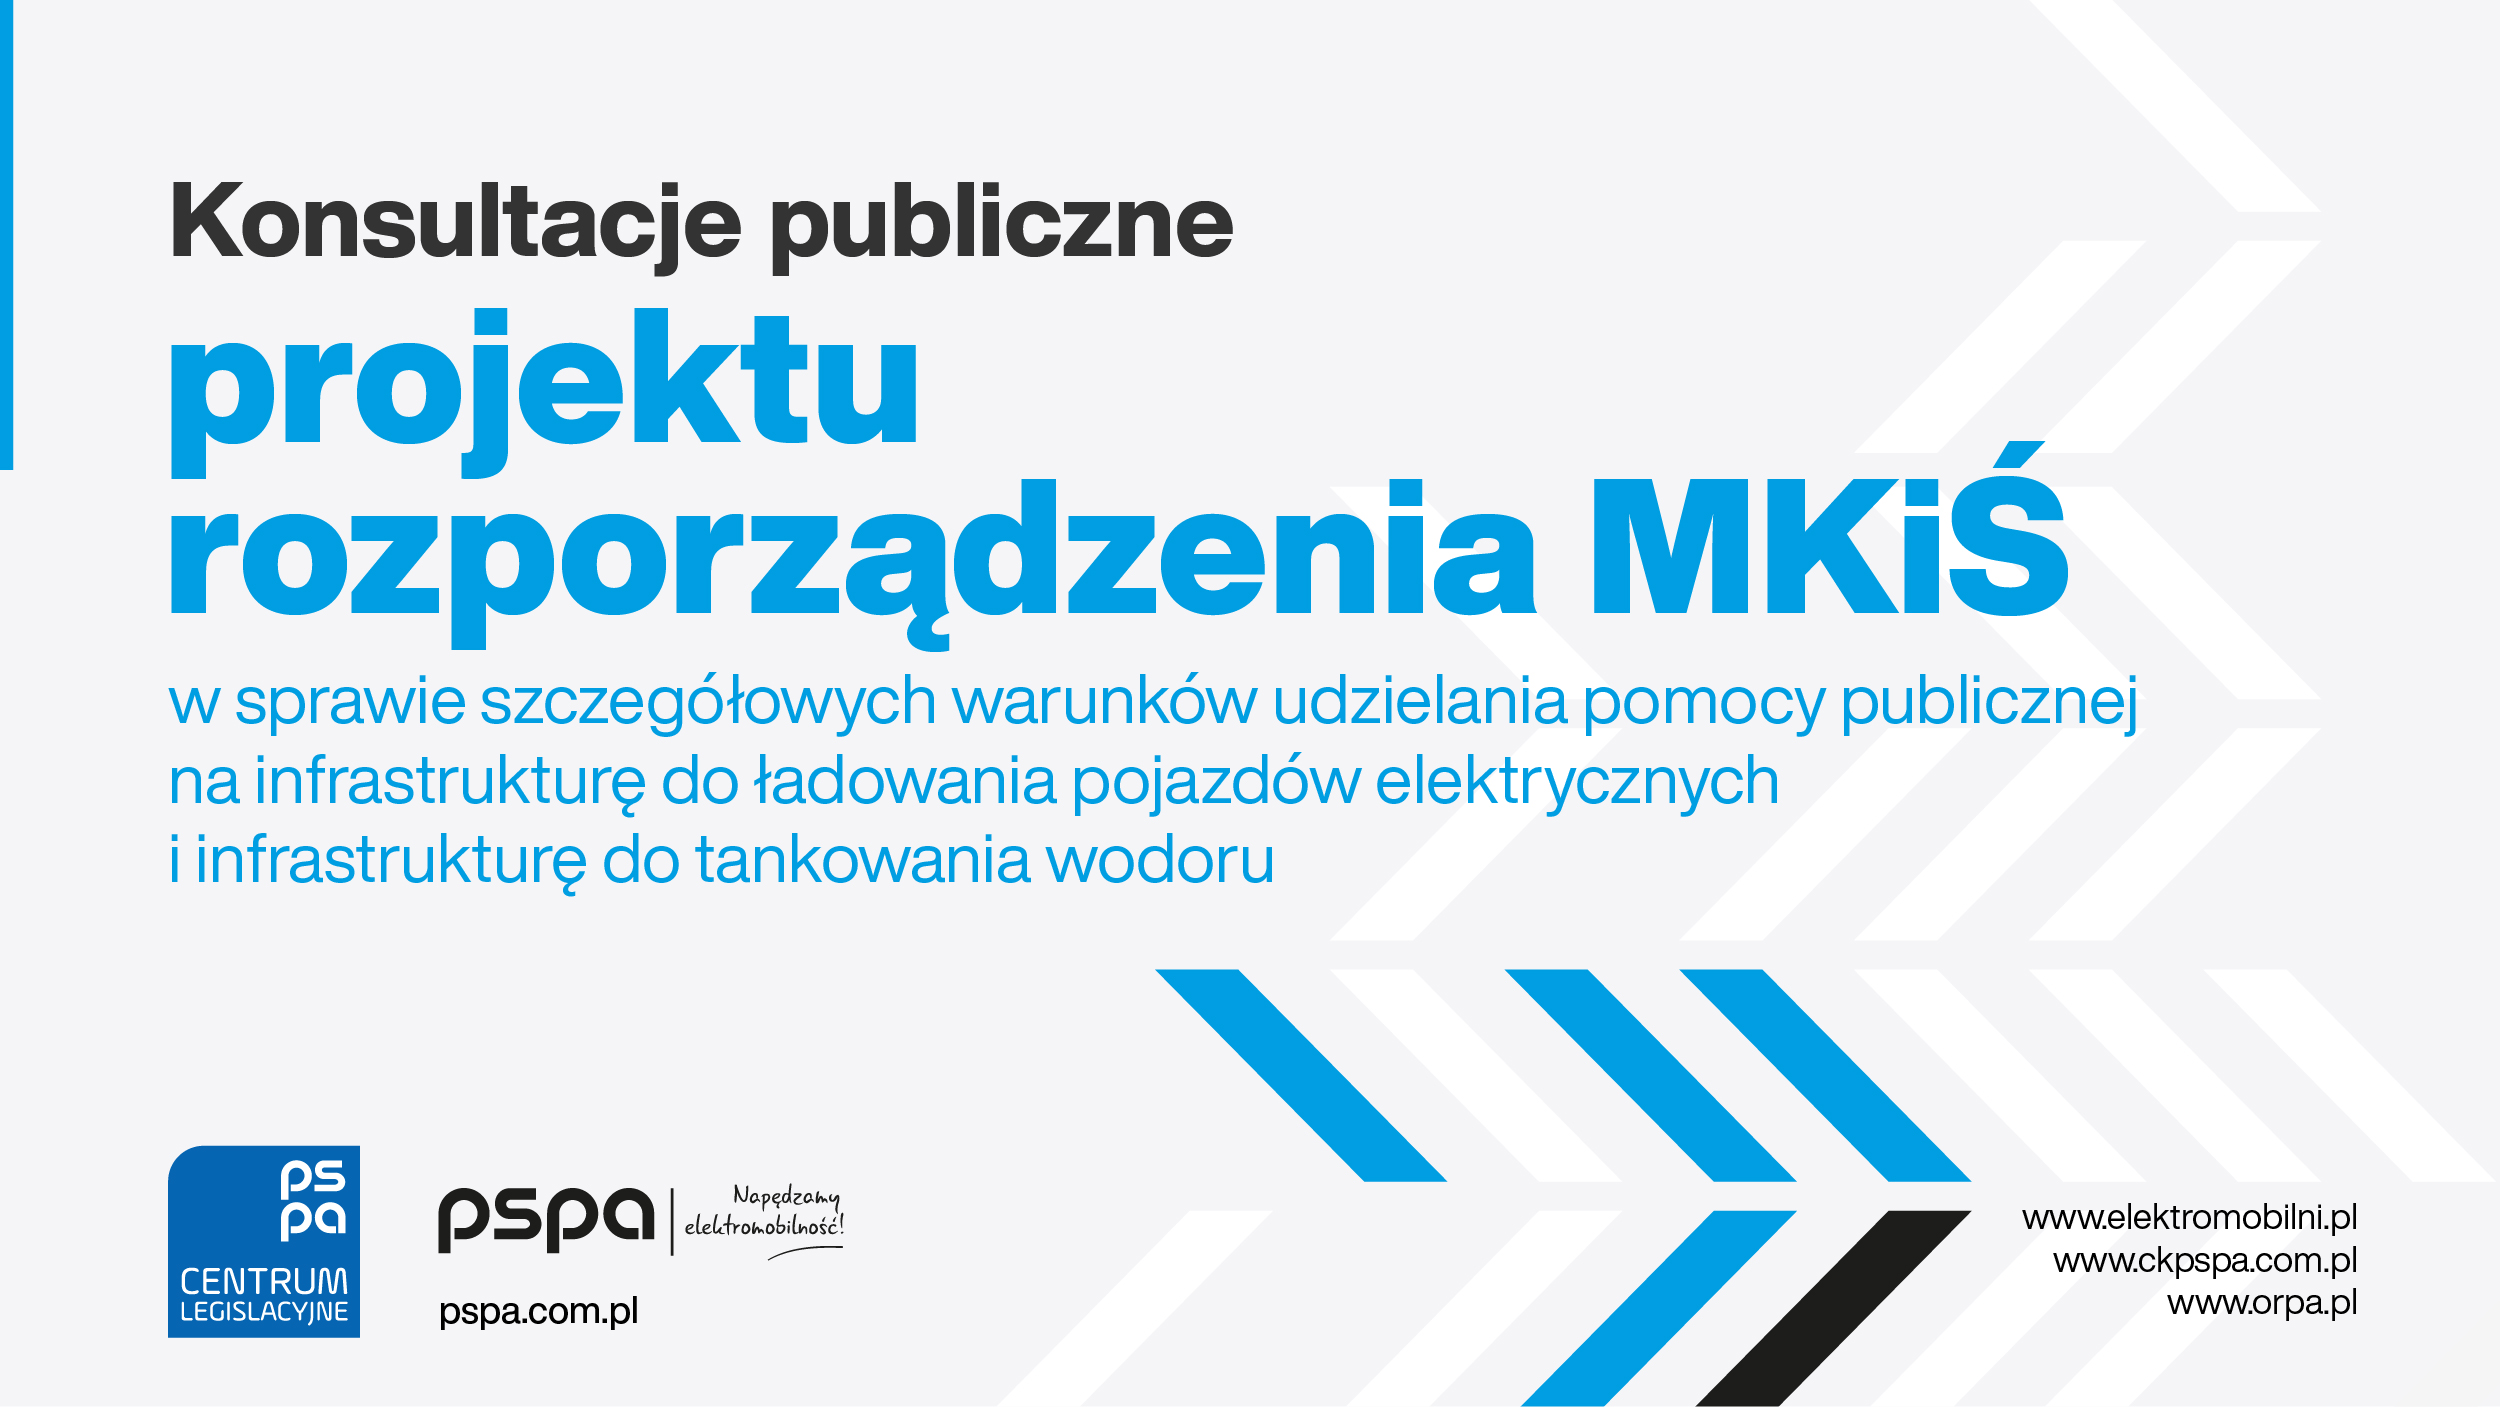 konsultacje_publiczne_rozporzadzenia_mkis_grafika_1200x675px_01